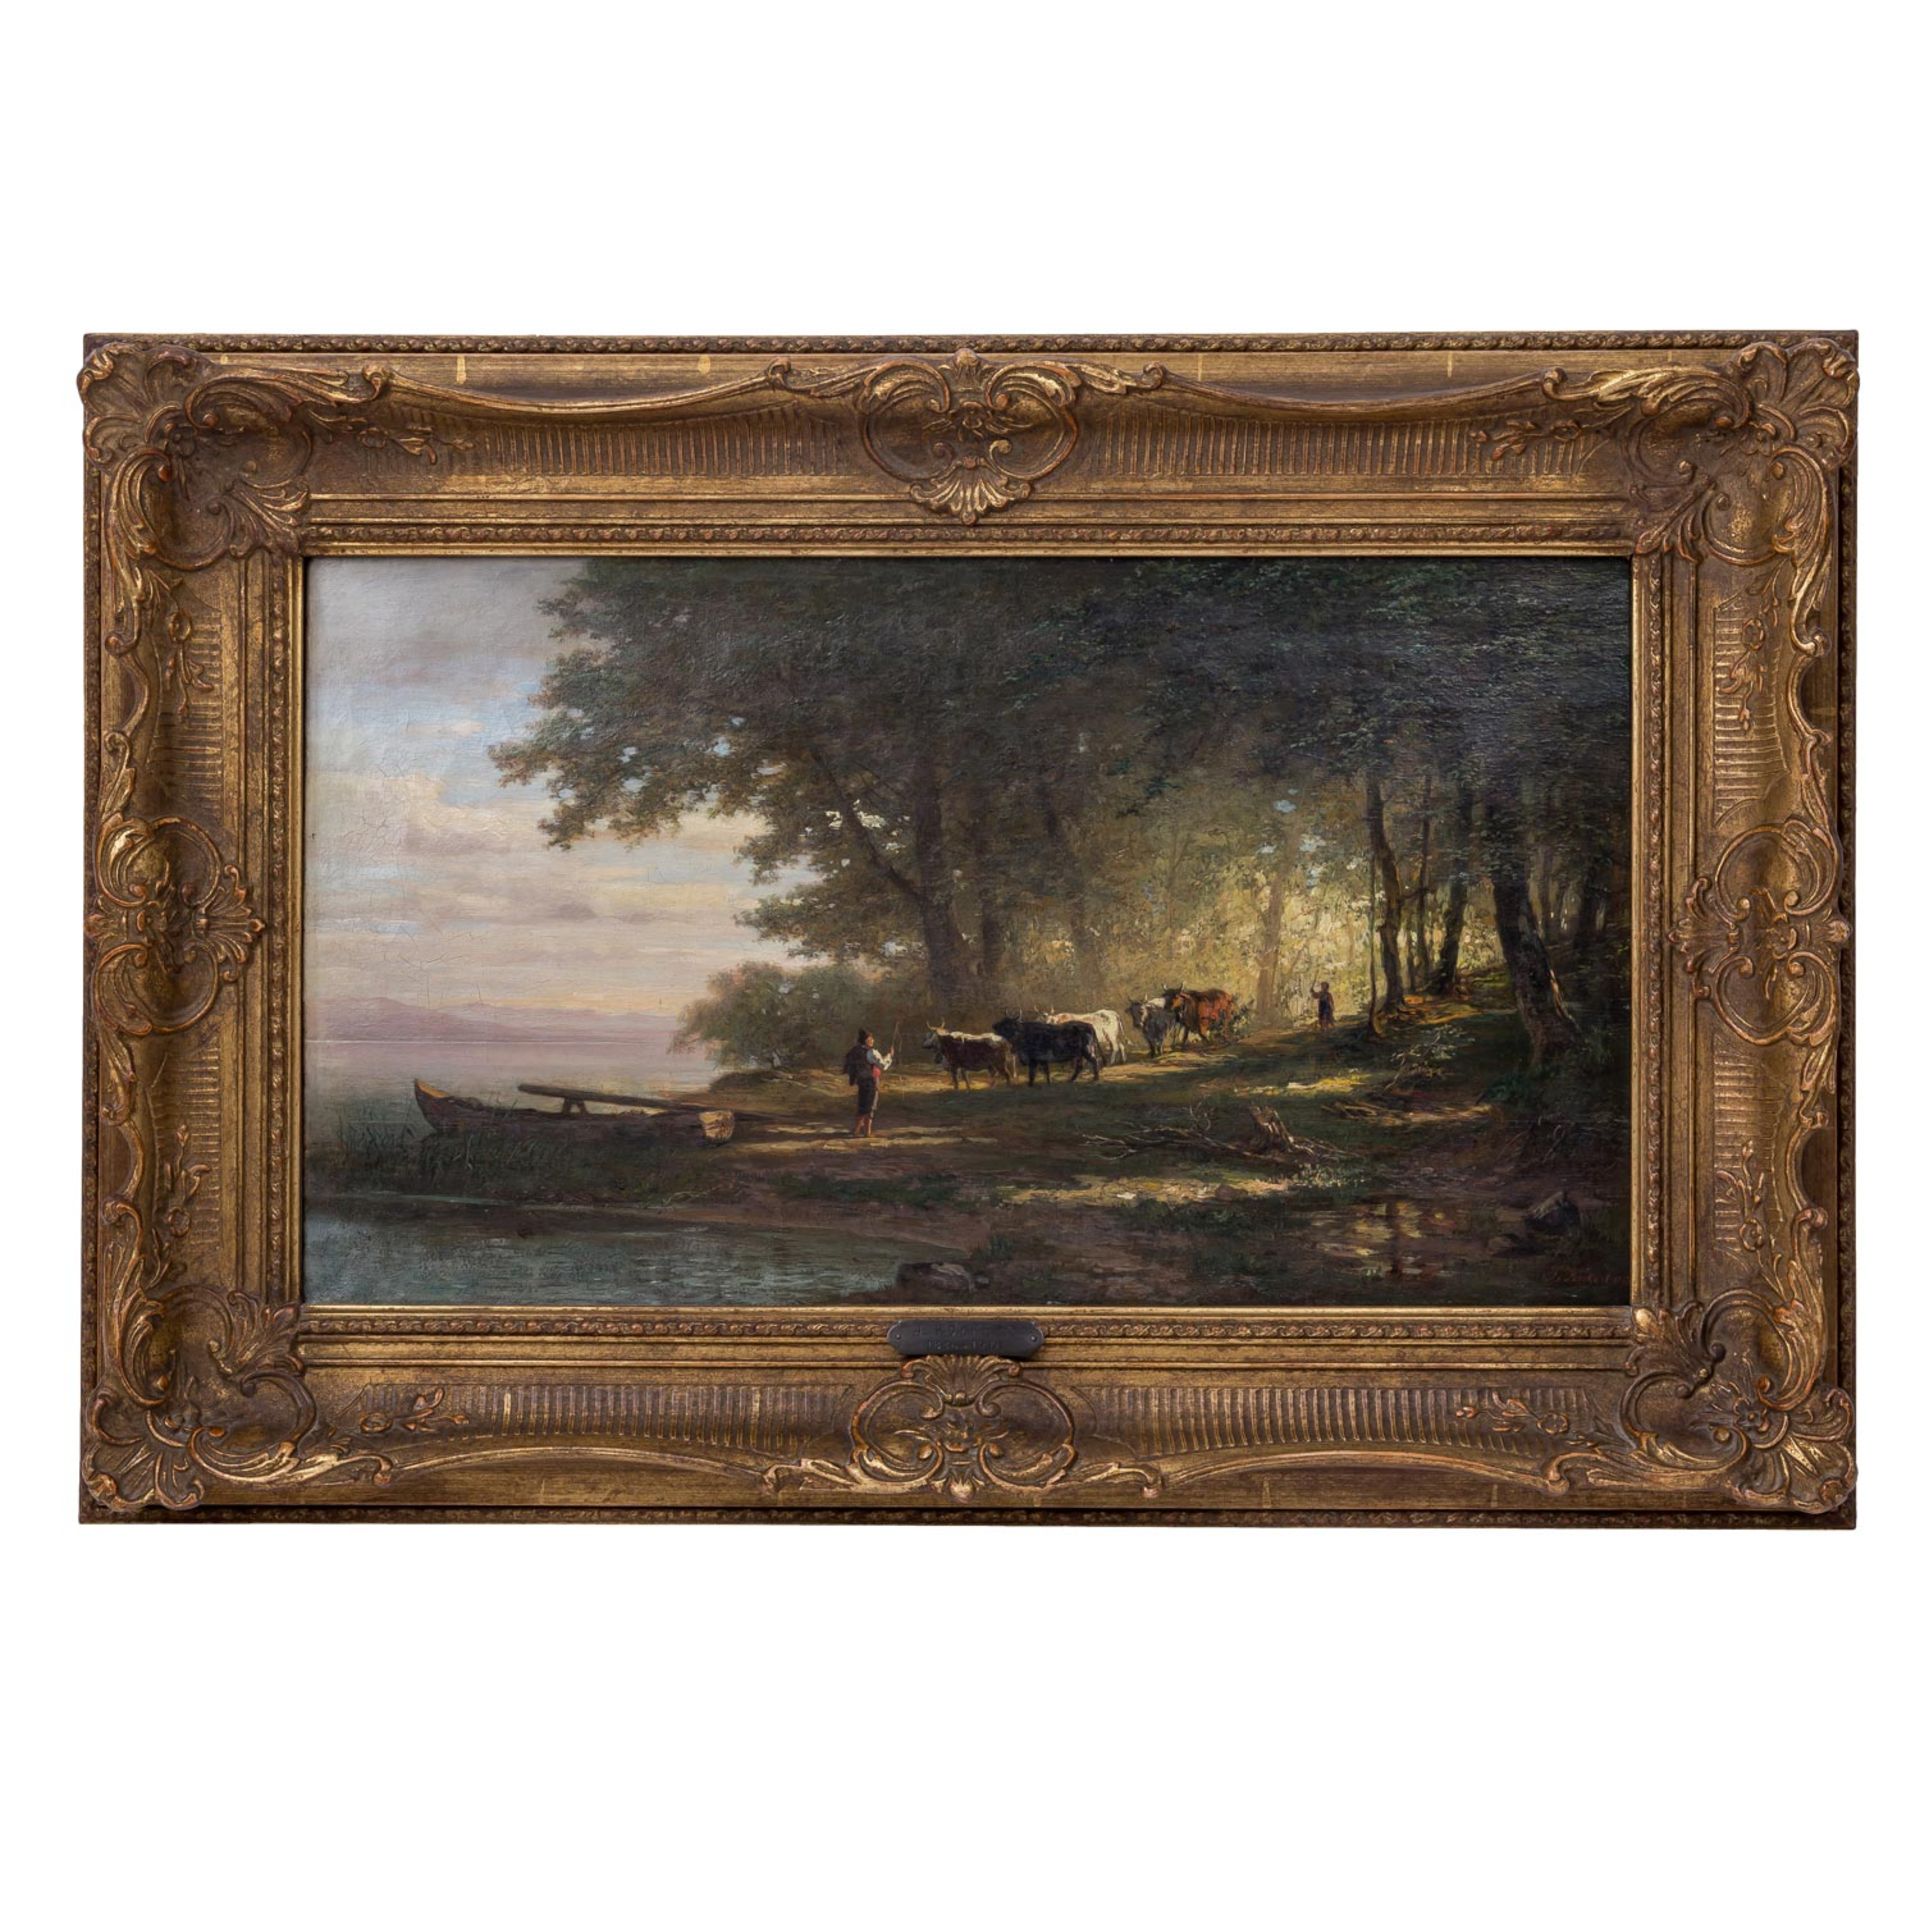 KÖCKERT, JULIUS (1827 - 1918), "Hirten mit Kühen an einem Ufer", 1885, - Bild 2 aus 10